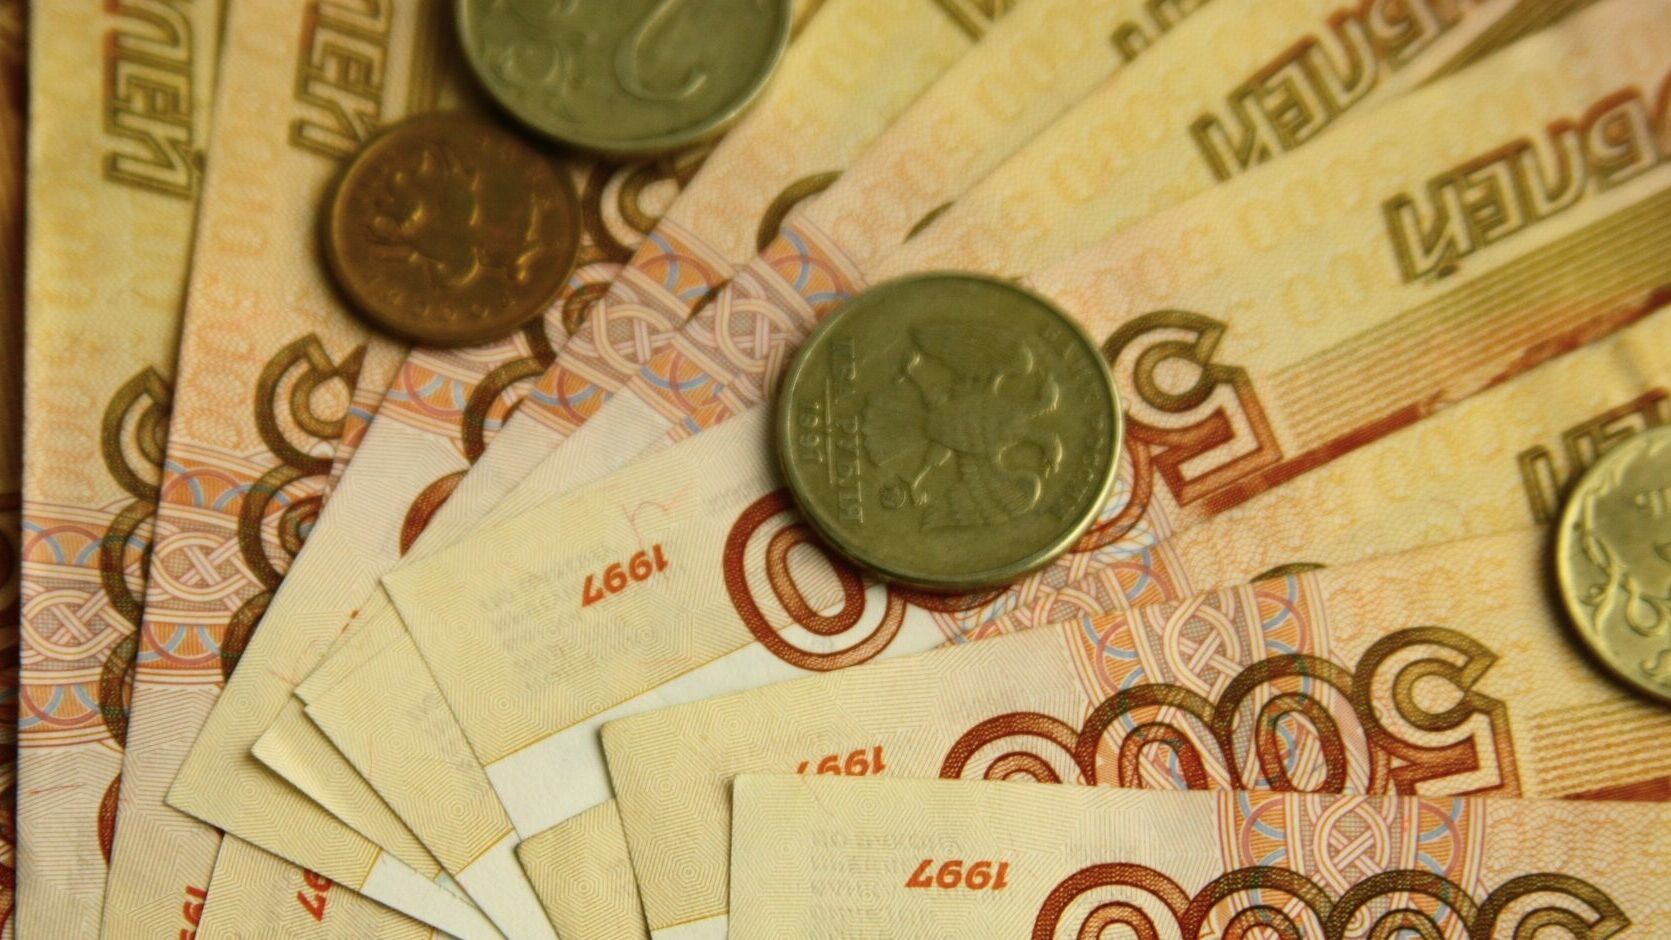 Глава Горнозаводского района подписал фиктивные акты на сумму свыше 11 миллионов рублей